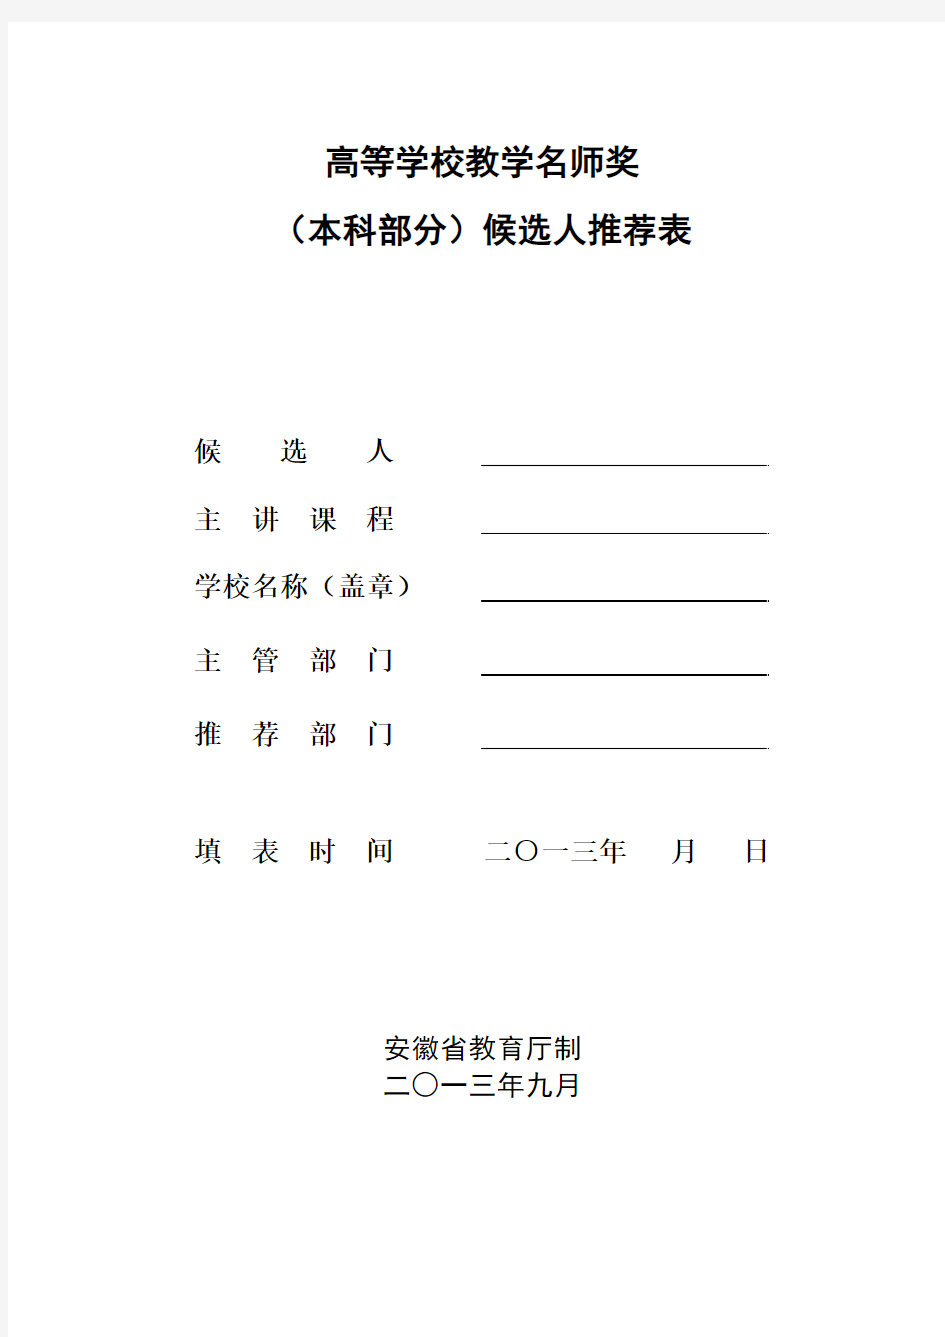 2013年安徽省高校省级教学名师(本科)候选人推荐表